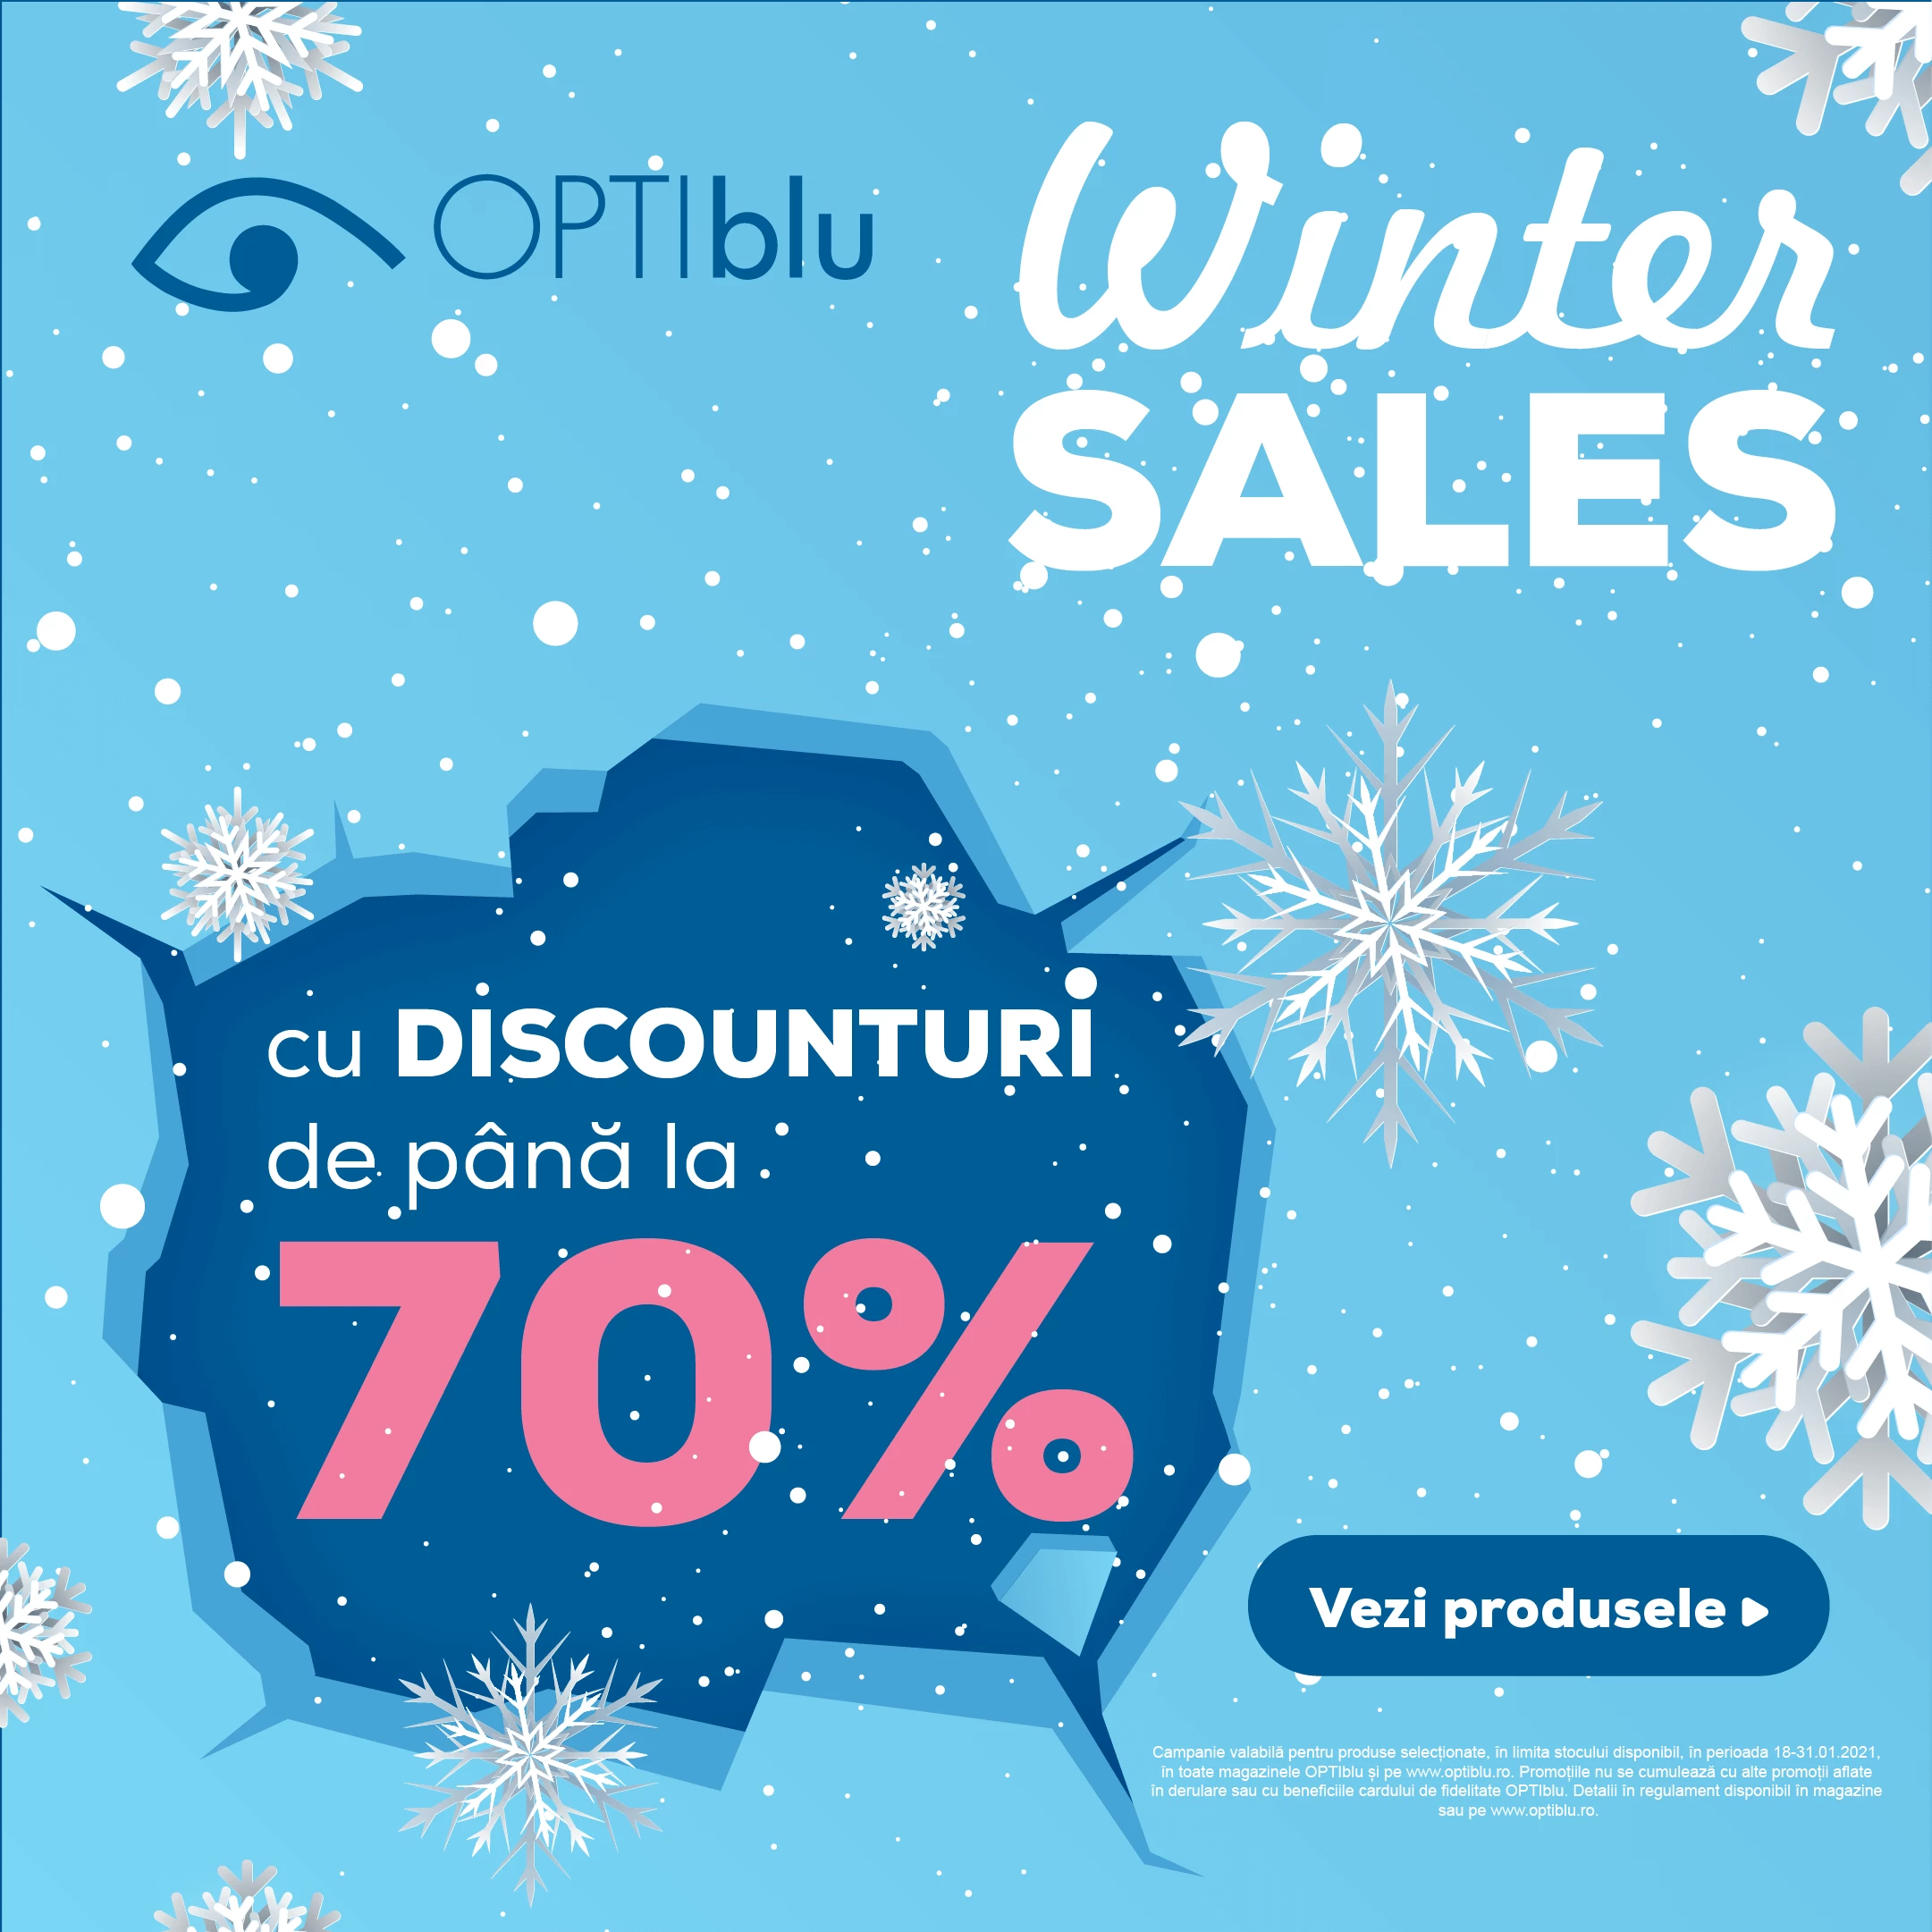 OPTIblu Winter Sales, Reduceri de până la -70%